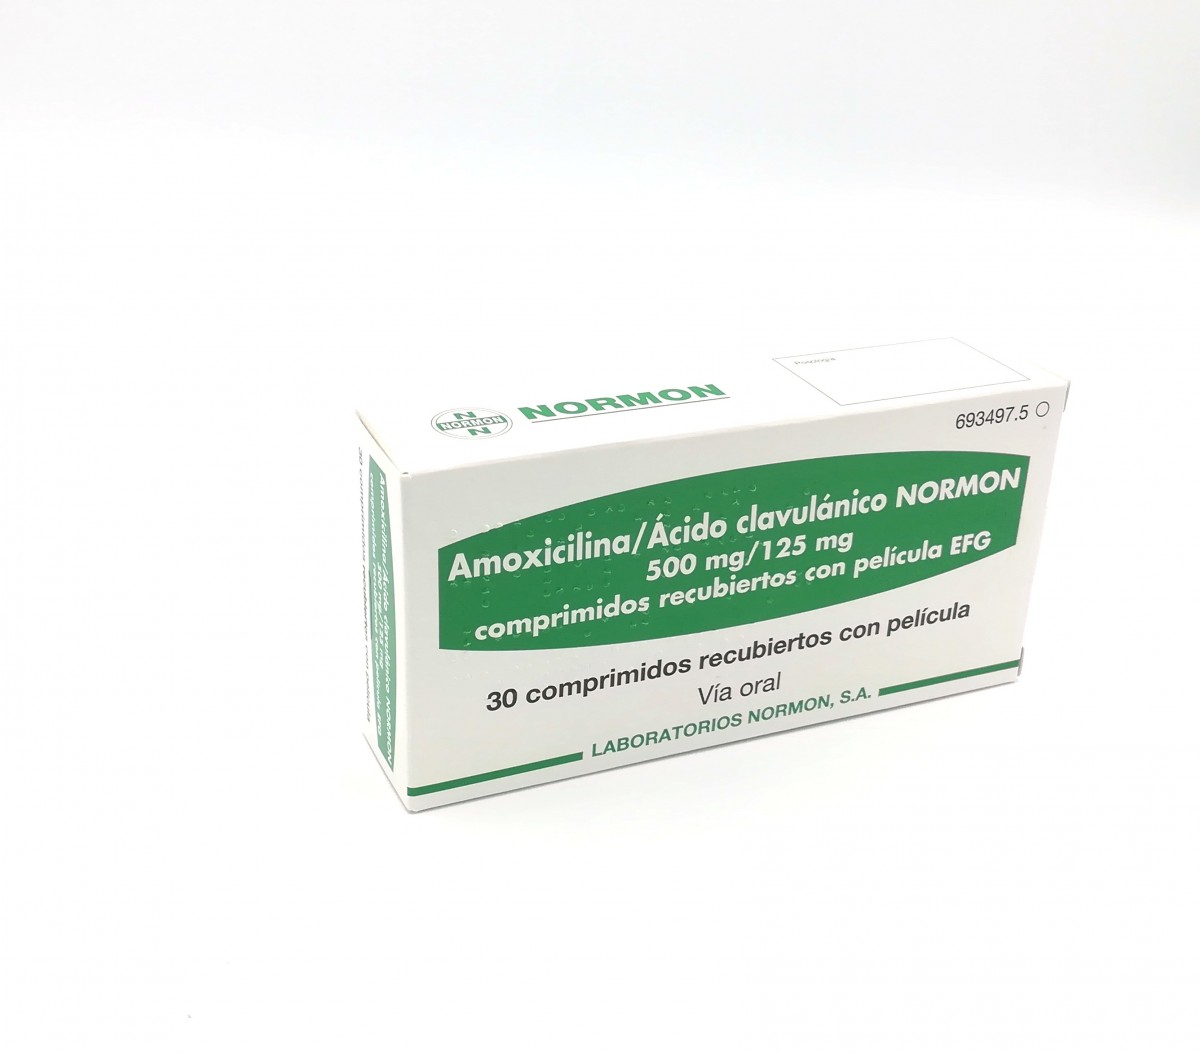 AMOXICILINA/ACIDO CLAVULANICO NORMON 500 mg /125 mg COMPRIMIDOS RECUBIERTOS CON PELICULA EFG, 24 comprimidos fotografía del envase.